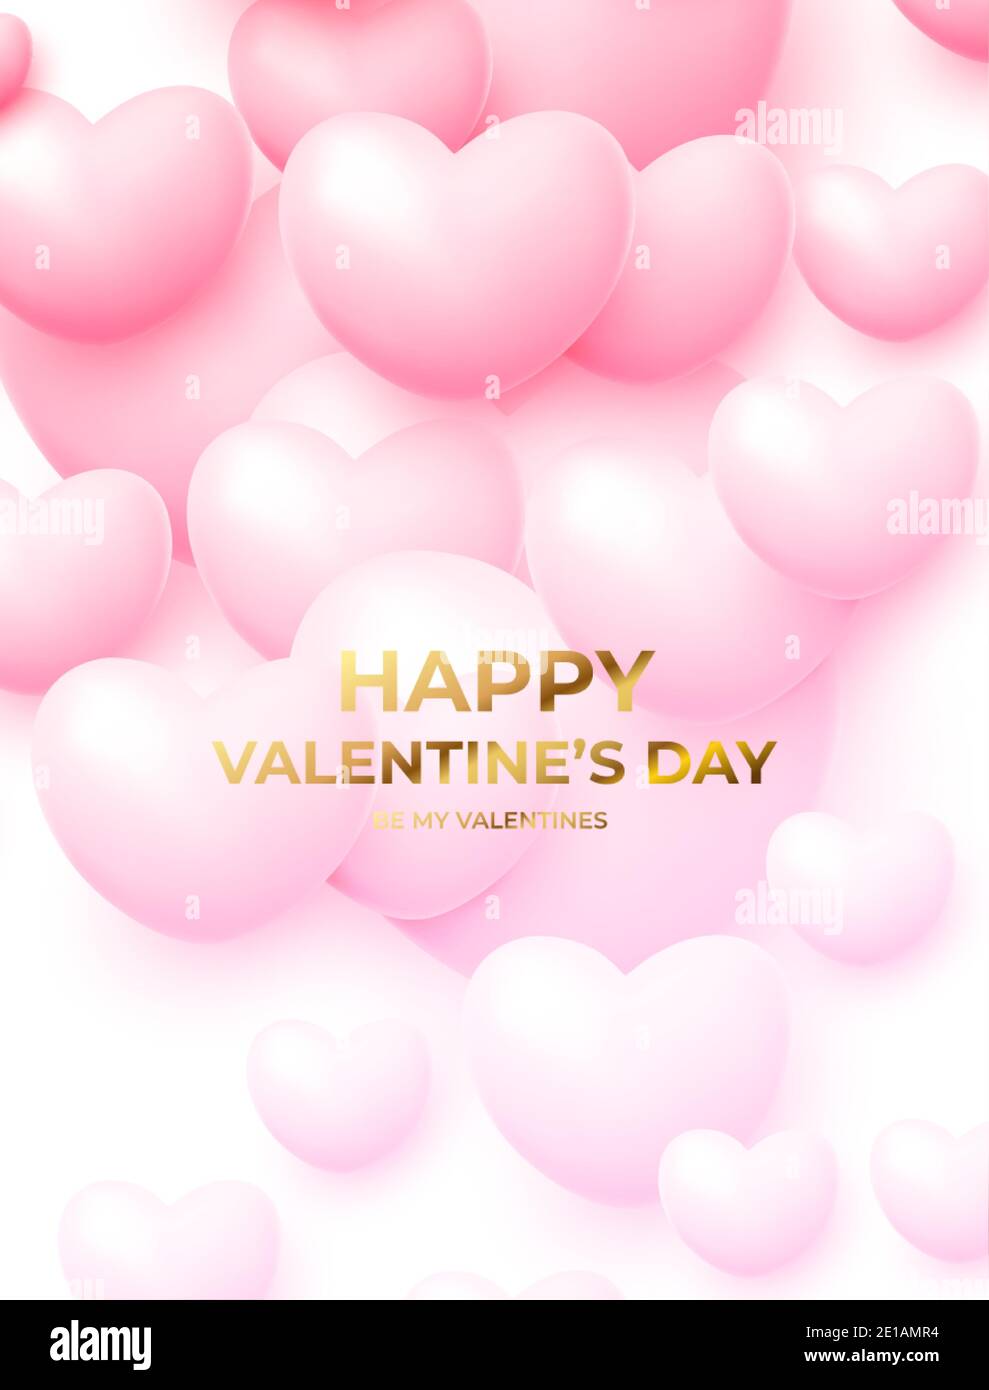 Concept design per poster di San Valentino con palloncini volanti rosa e bianco con scritta dorata Happy San Valentino. Illustrazione vettoriale Illustrazione Vettoriale